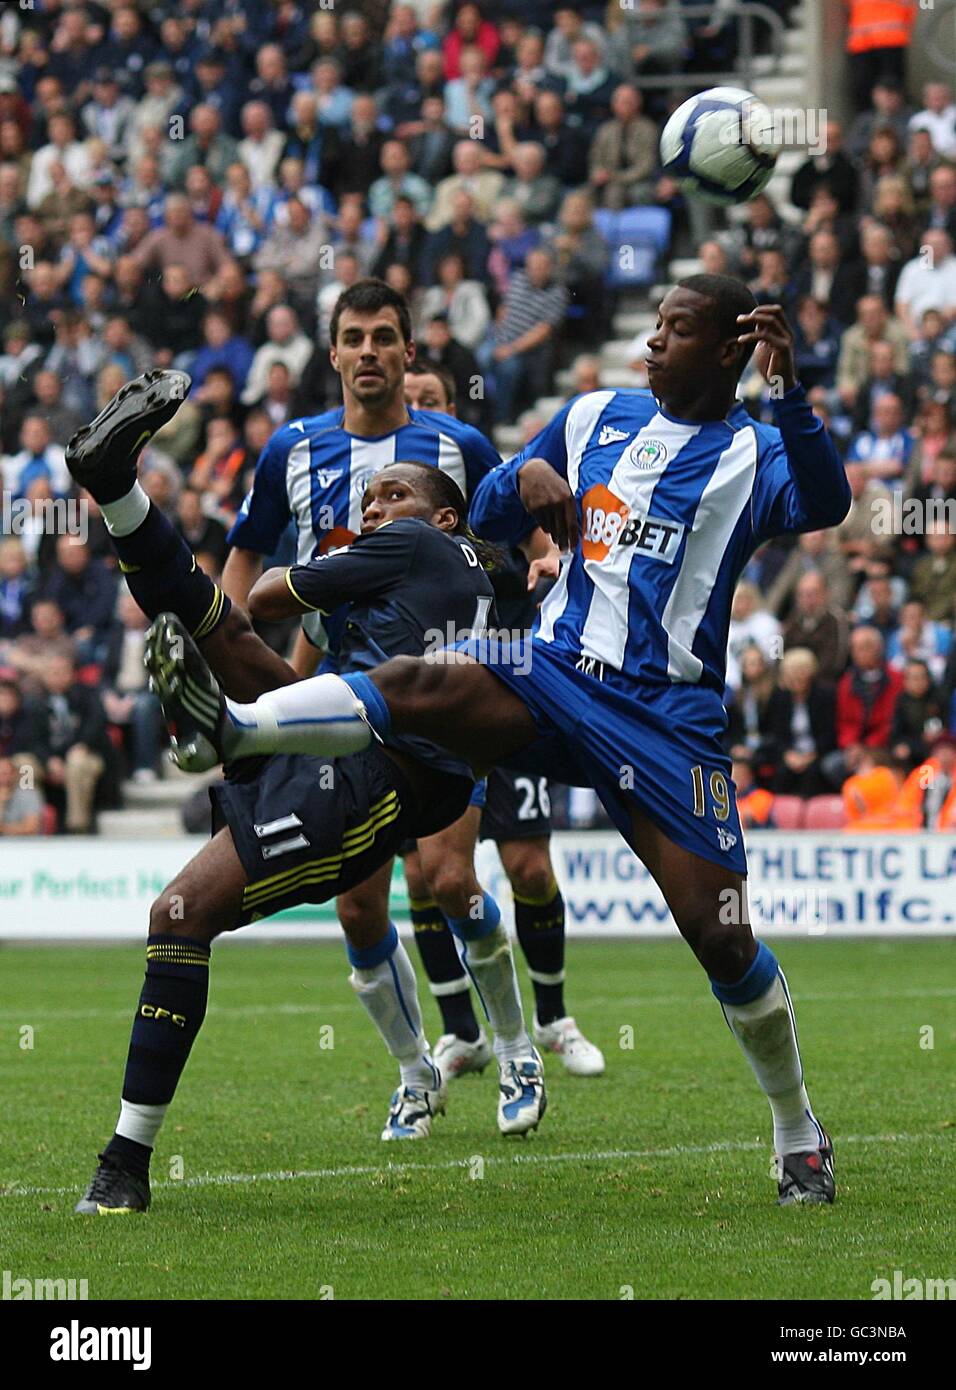 Fußball - Barclays Premier League - Wigan Athletic gegen Chelsea - DW Stadium. Chelseas Didier Drogba (links) versucht ashot auf das Tor hinter Titus Bramble von Wigan Athletic Stockfoto